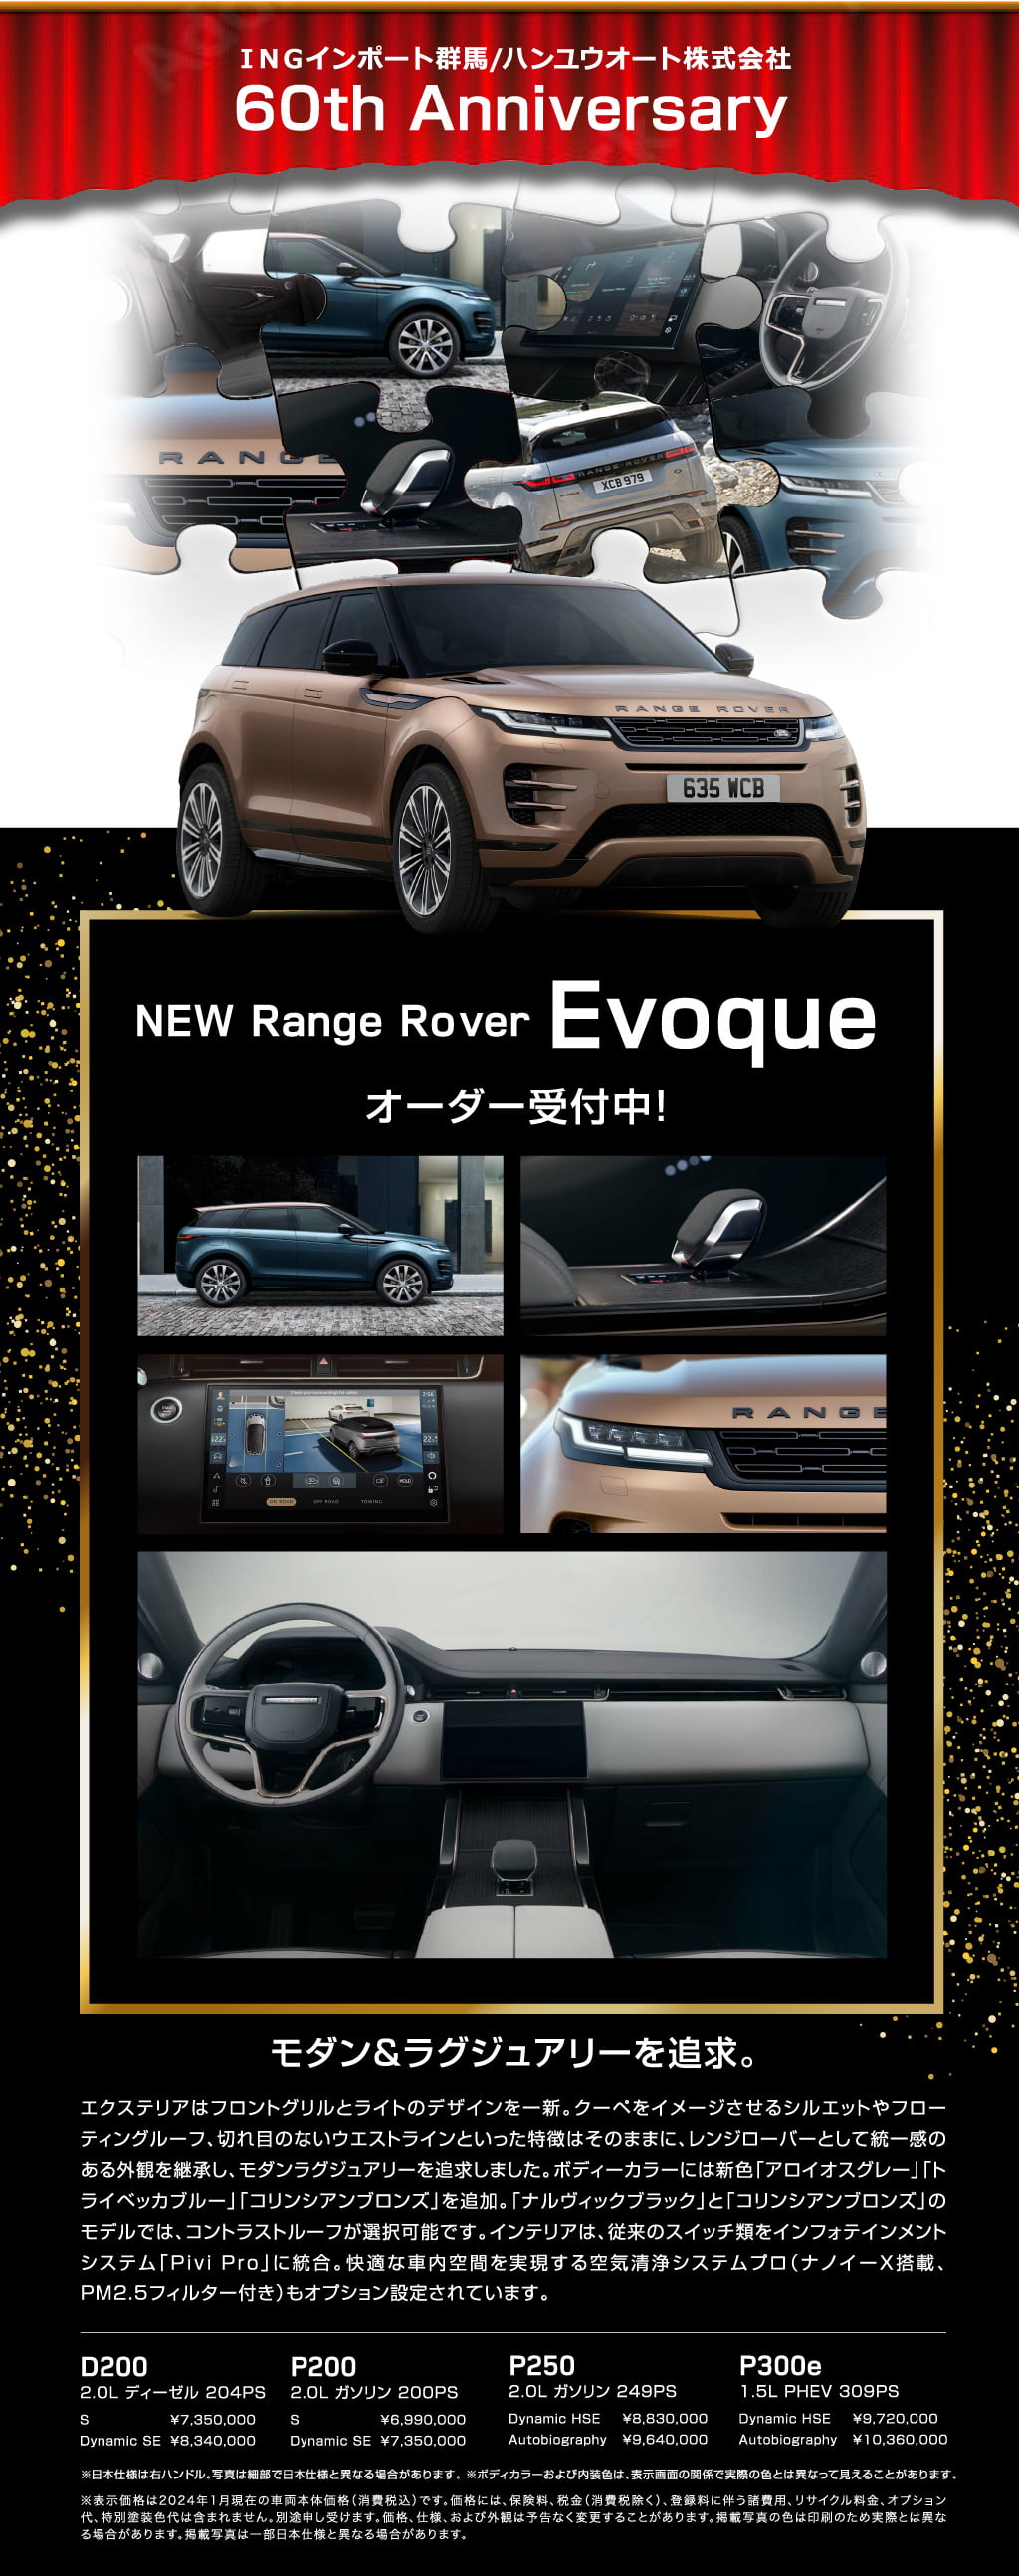 NEW Range Rover Evoque